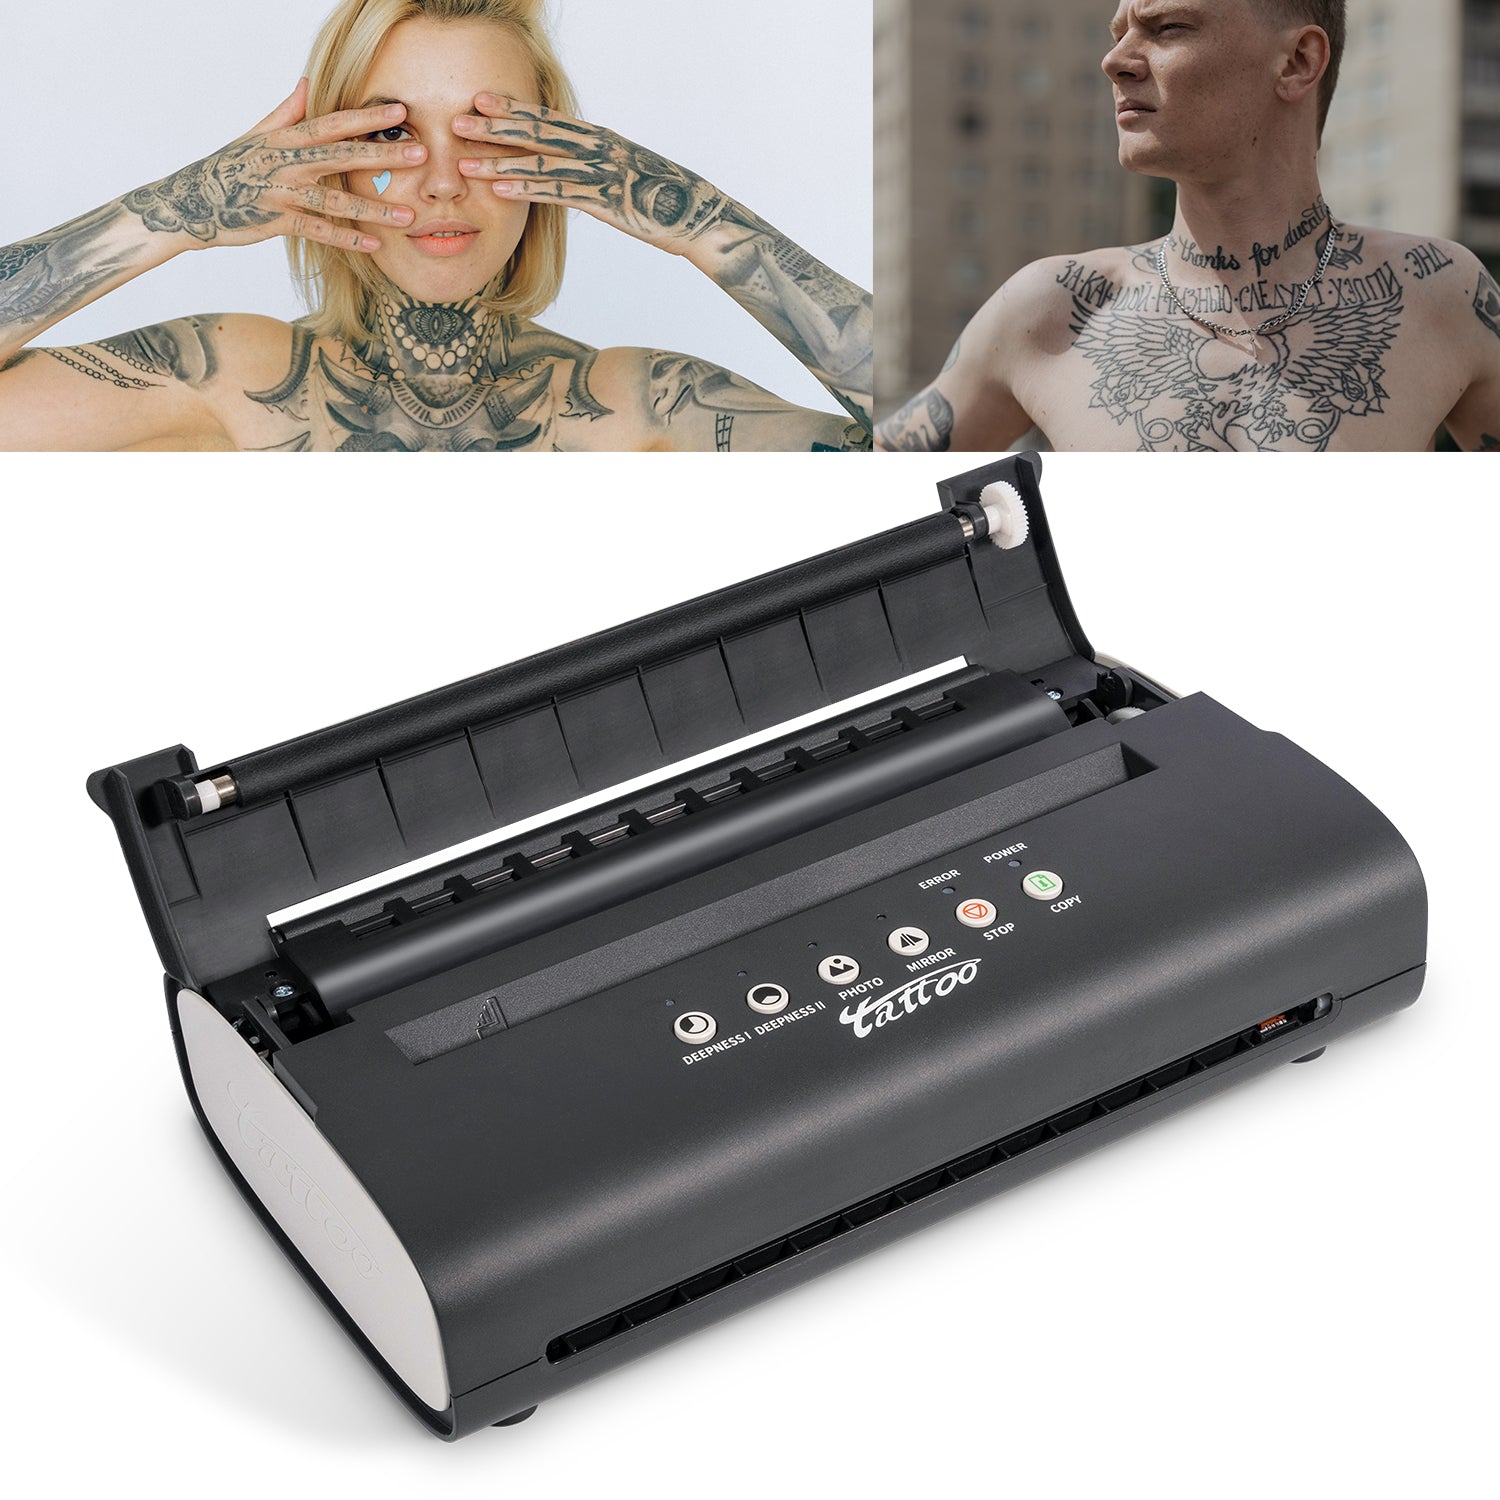 LifeBasis MT200 Tattoo Stencil Printer 